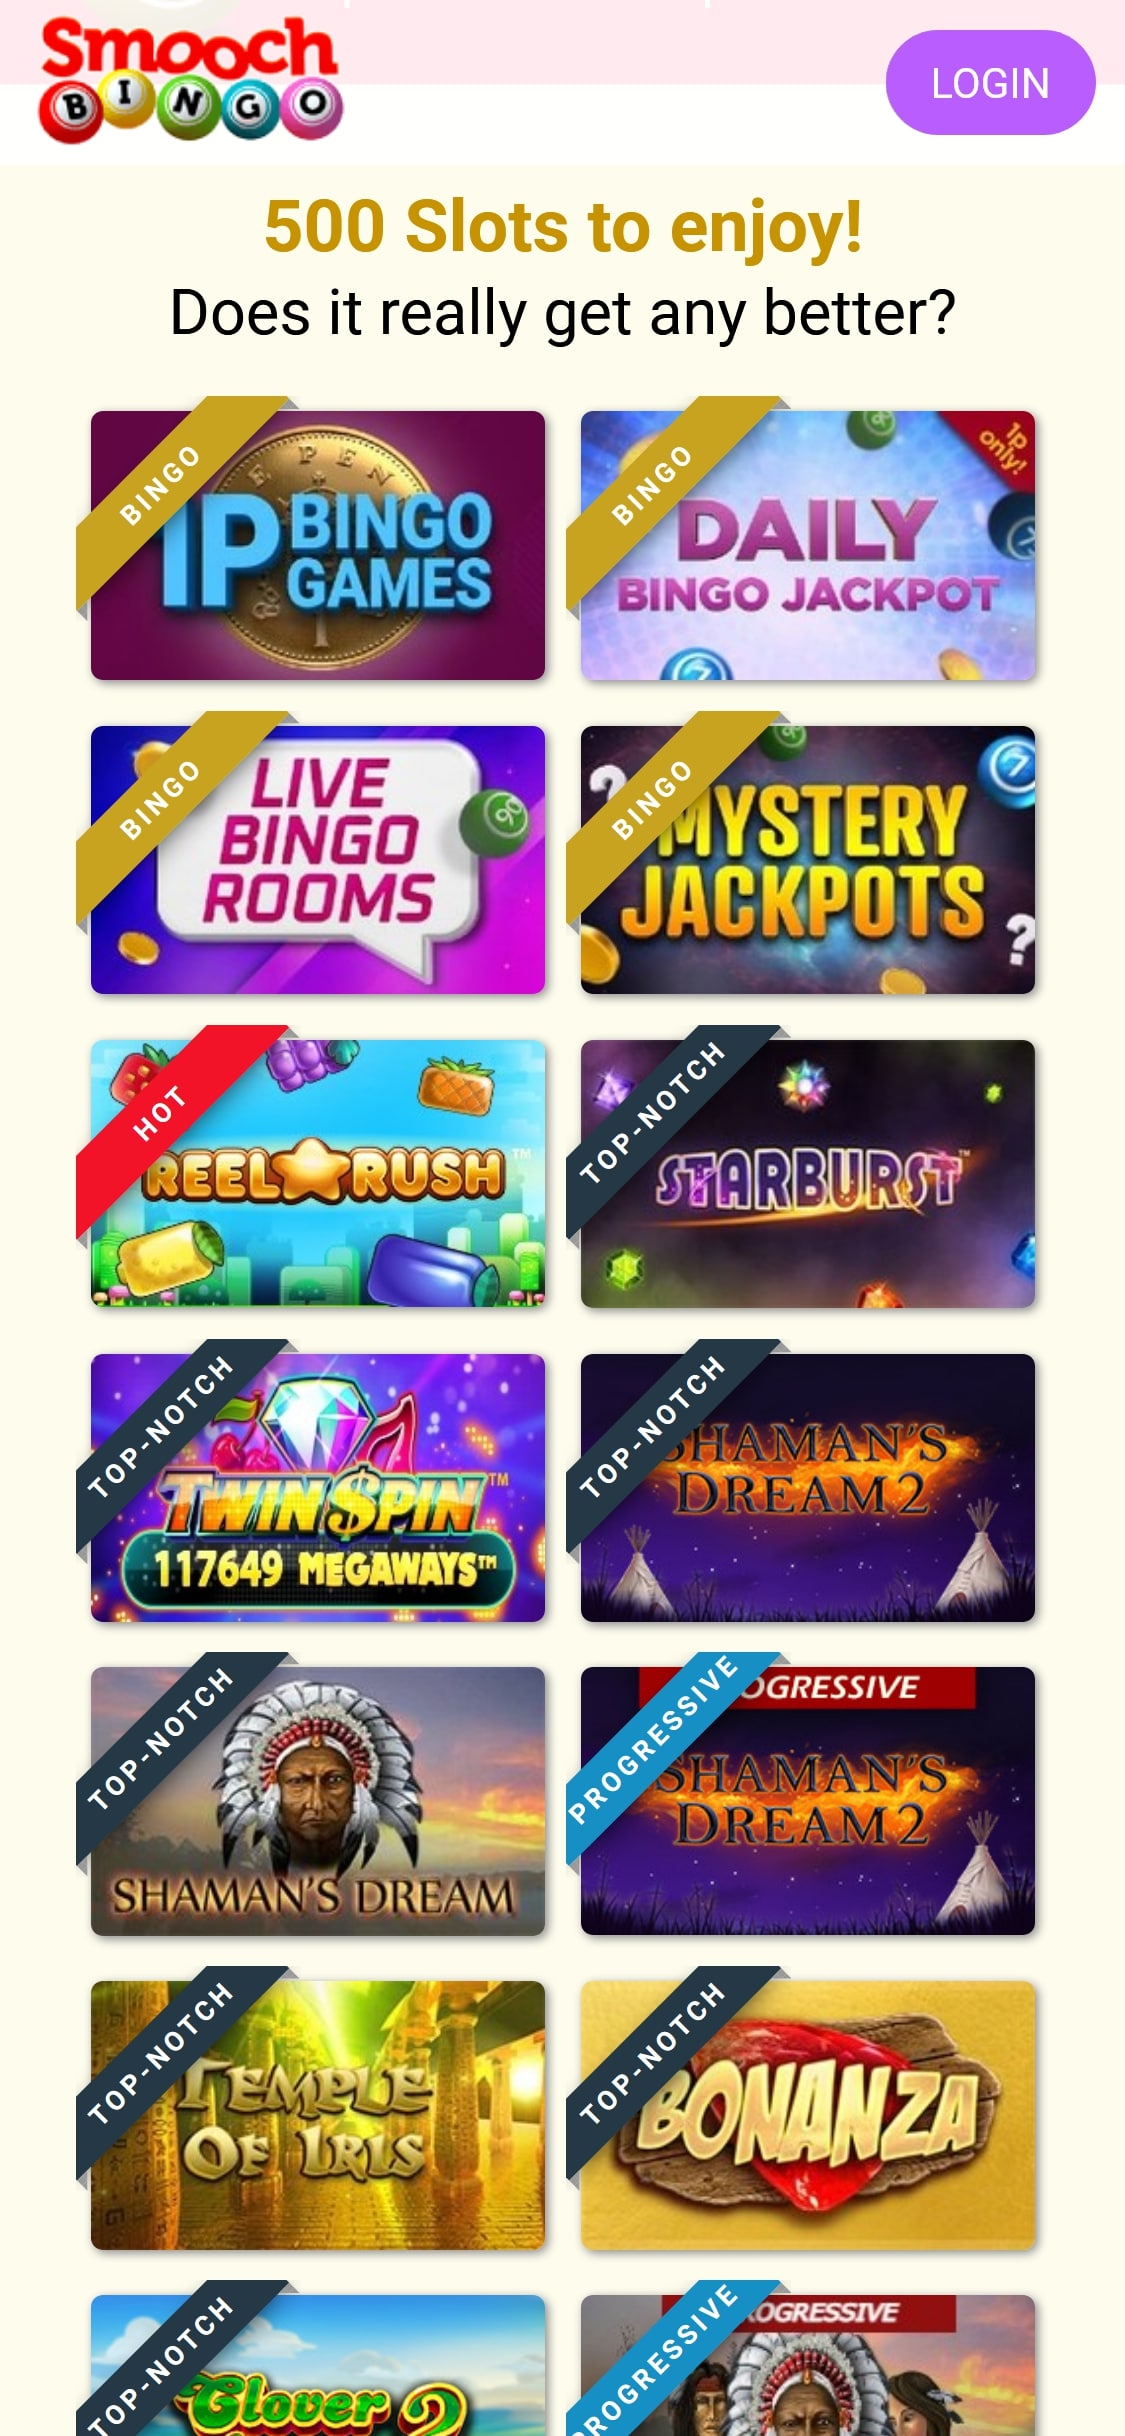 Smooch Bingo Casino Mobile Games Review